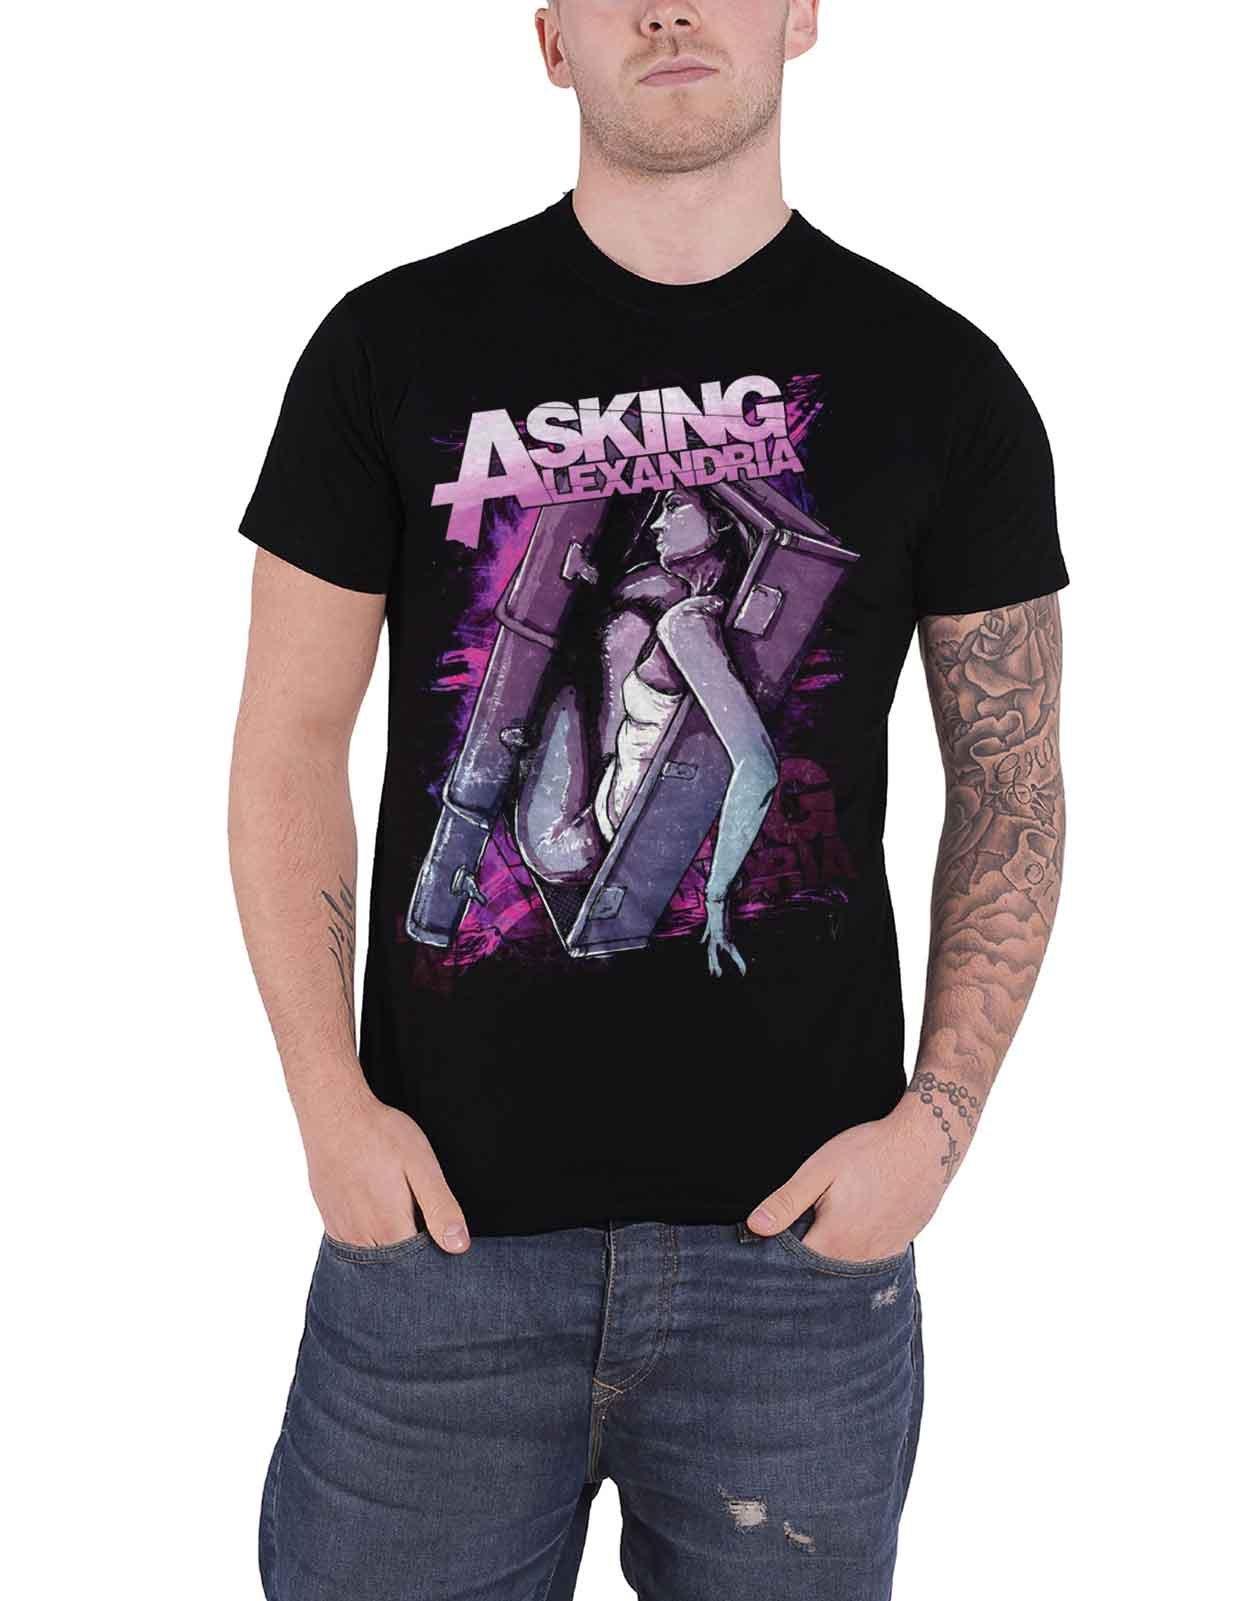 футболка для девочек-гробов Asking Alexandria, черный пазл картонный 29x20 см музыка asking alexandria 18447